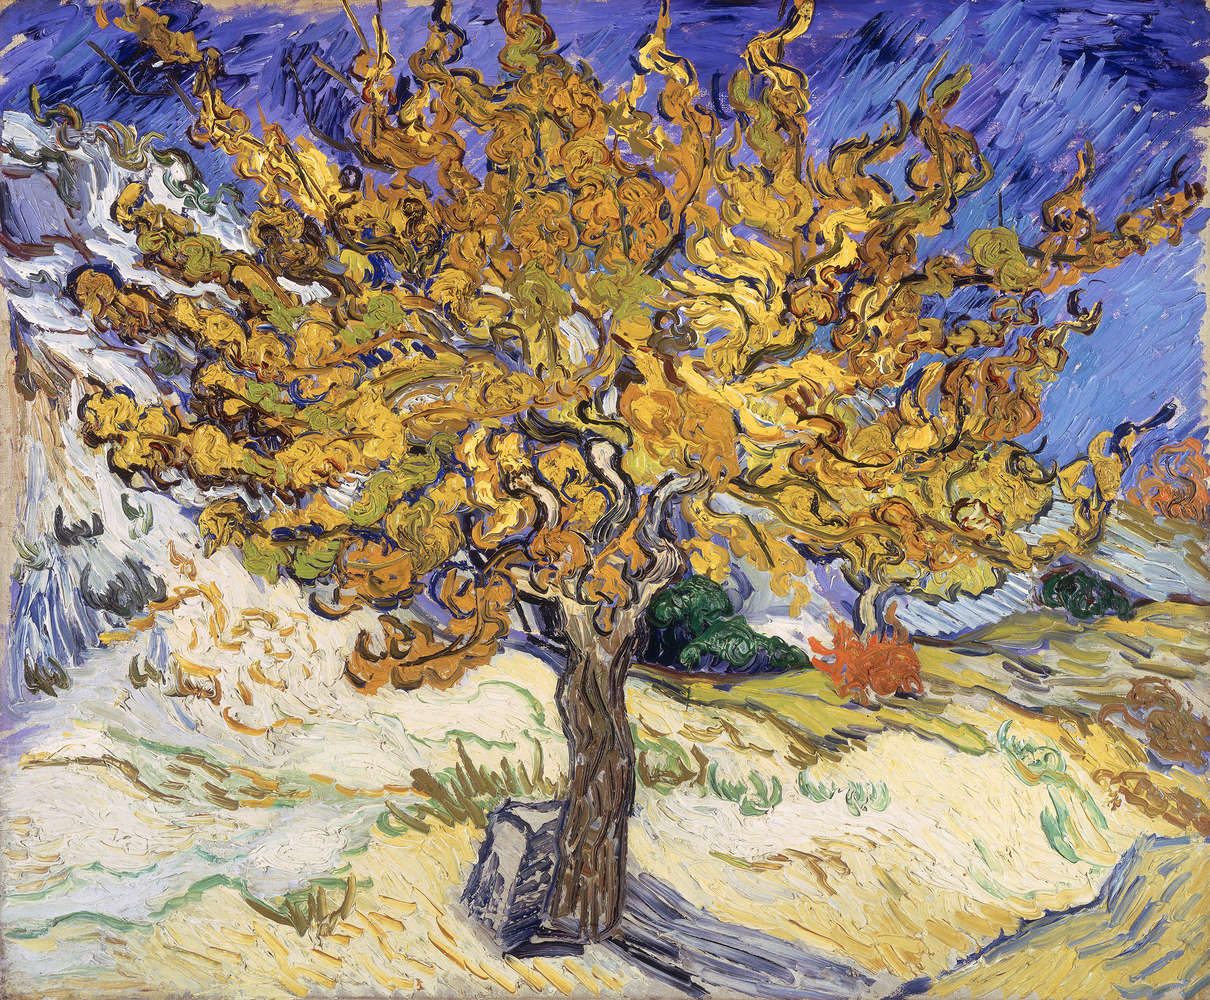             Papier peint panoramique "mûrier" de Vincent van Gogh
        